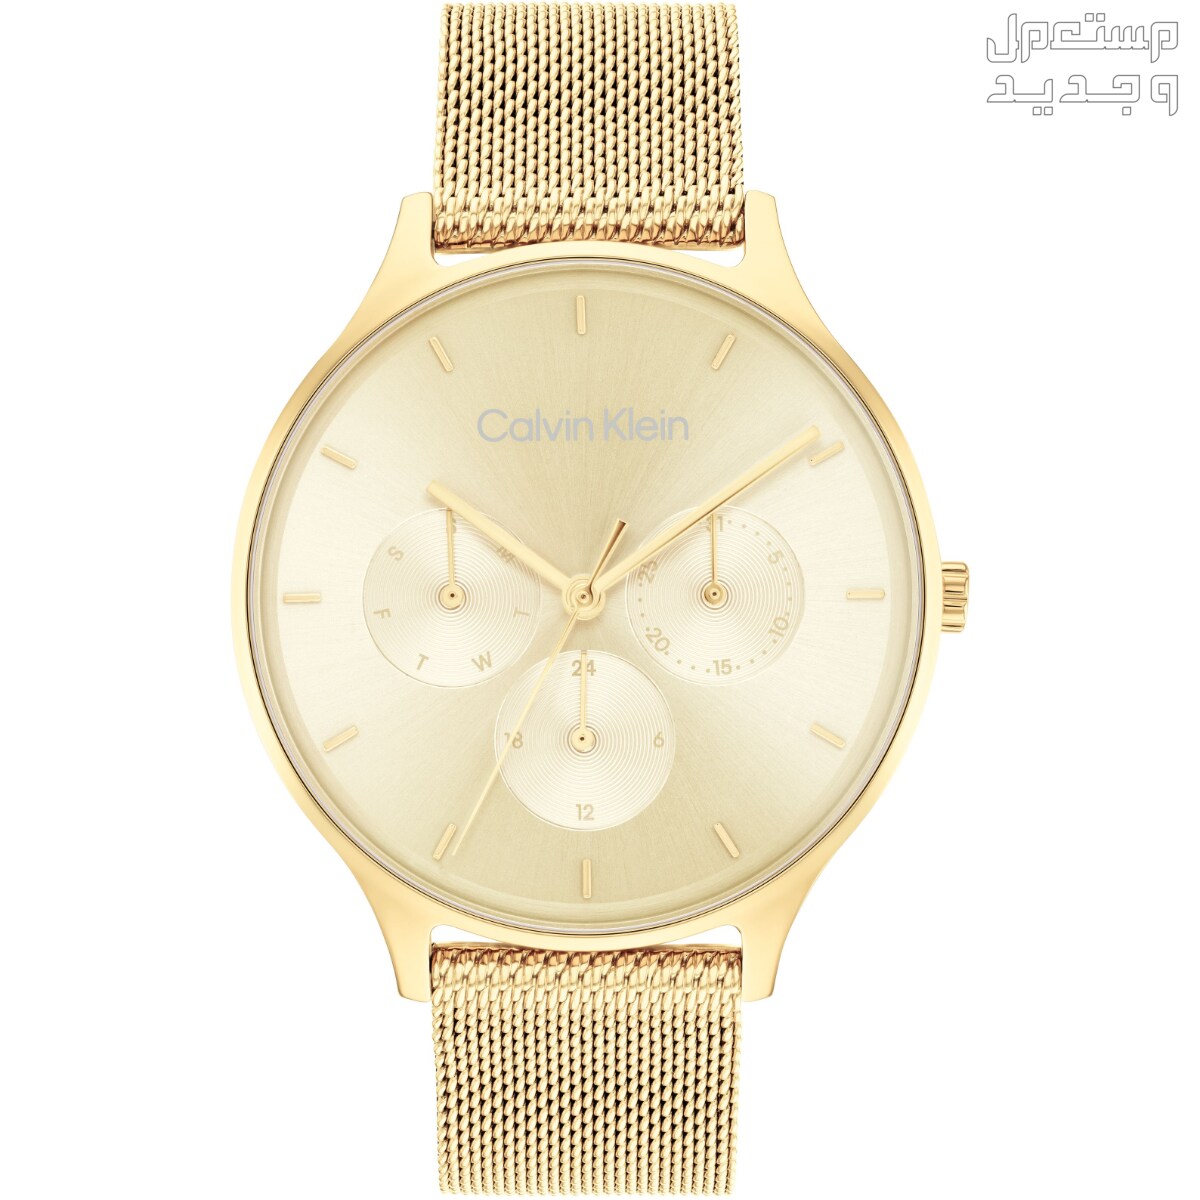 أنواع ساعات يد ذهب نسائية واسعارها في لبنان ساعة Calvin Klein Timeless Multifunction Day and Date Gold Steel Watch 25200103